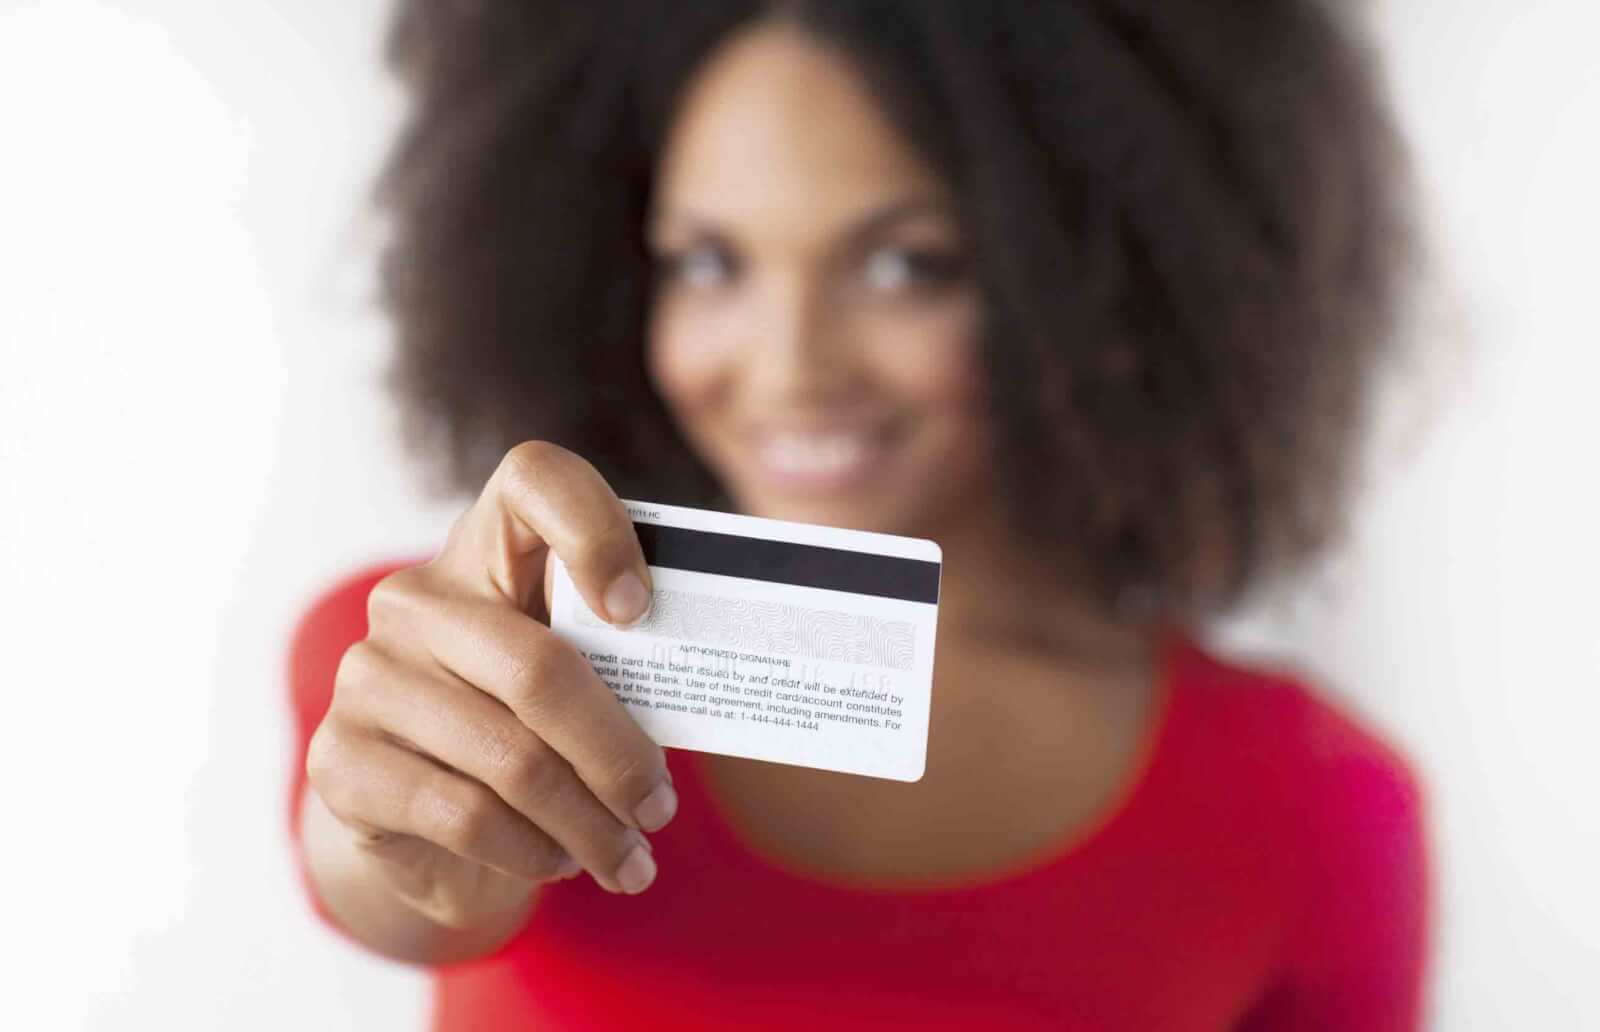 Обналичивание кредитных карт, эффективные финансовые операции